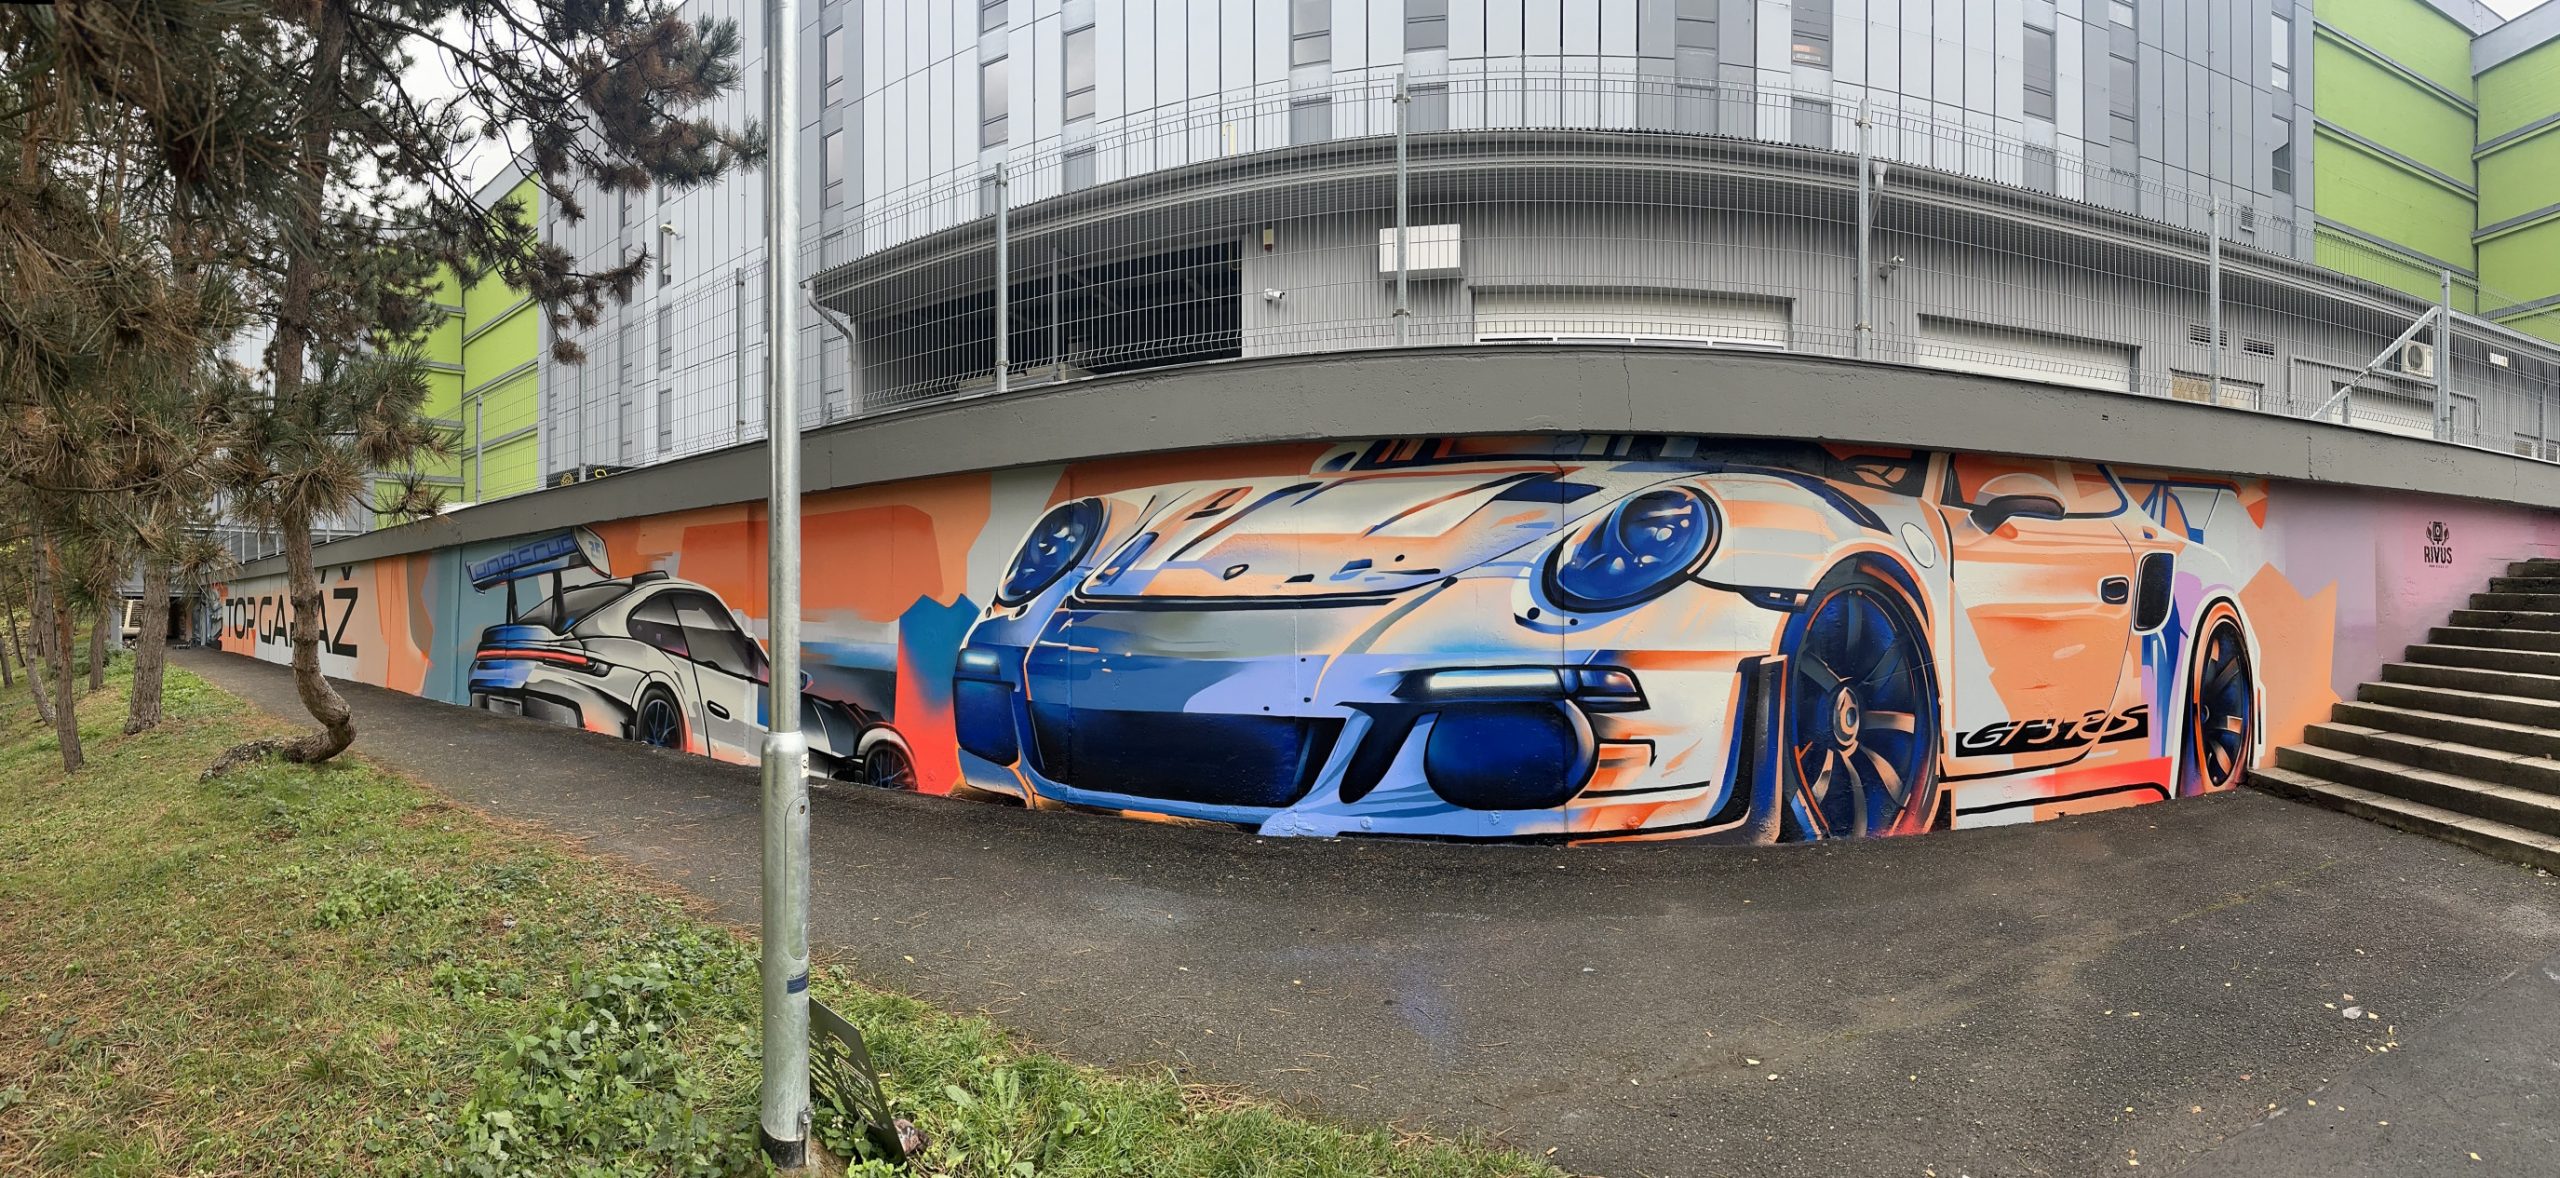 Top Garaz, mural, Praha, Rivus, Porsche, Zakazkova malba, panorama